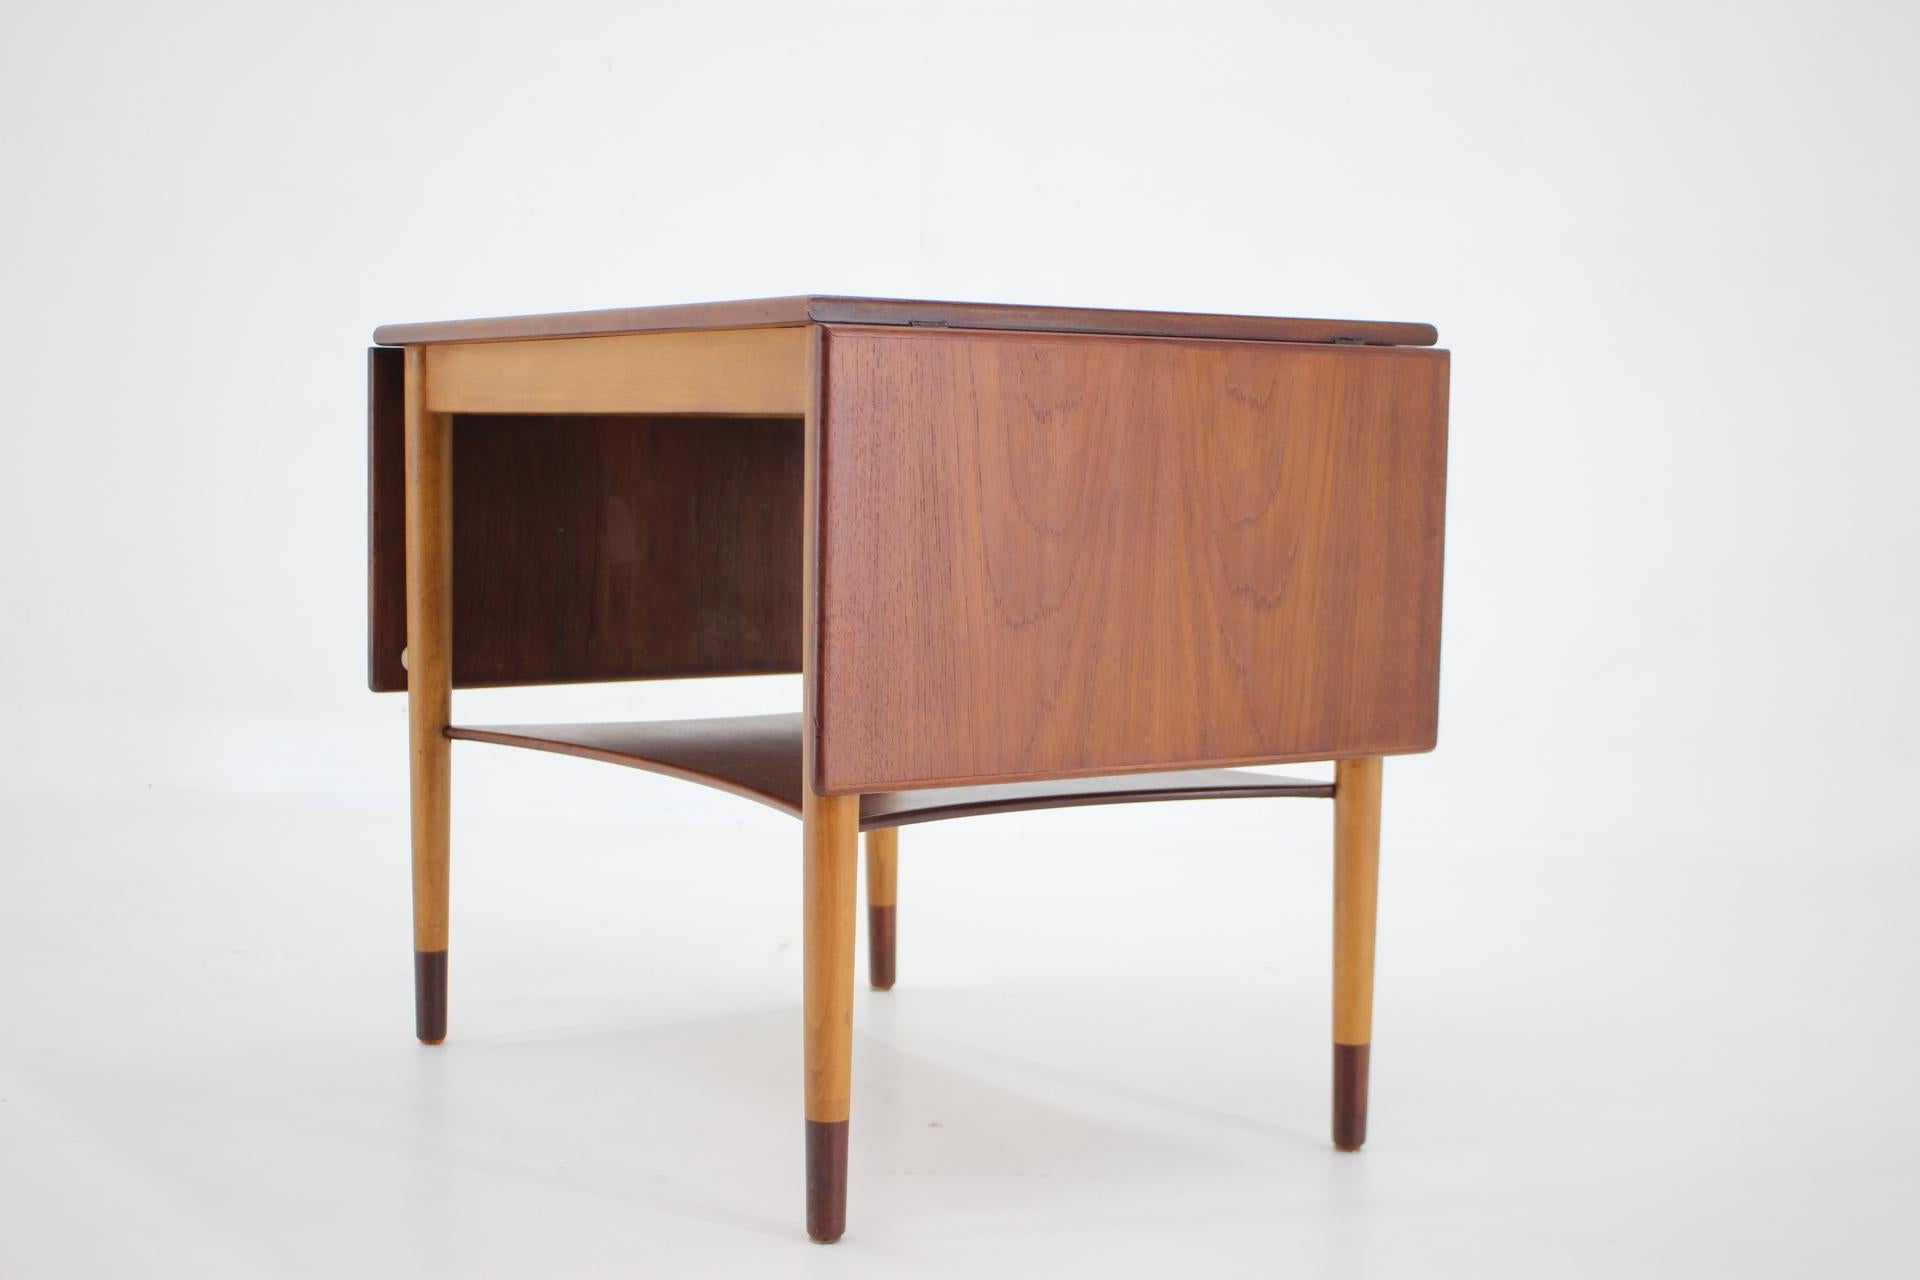 1960s Borge Mogensen Teak and Oak Coffee Table for Soborg Mobelfabric, Denmark For Sale 1